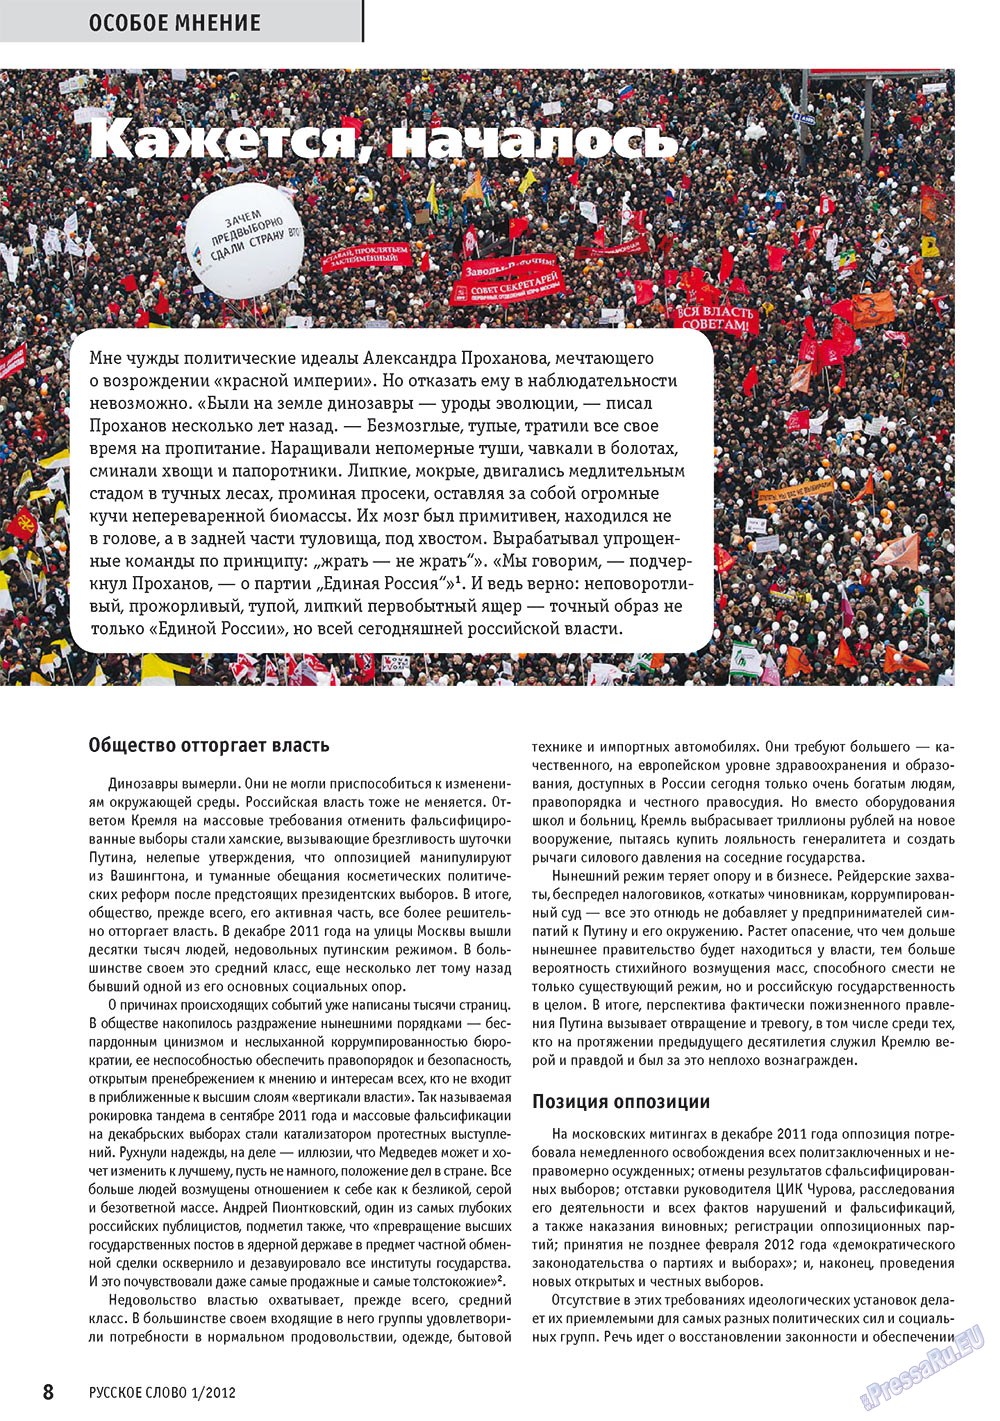 Русское слово, журнал. 2012 №1 стр.10